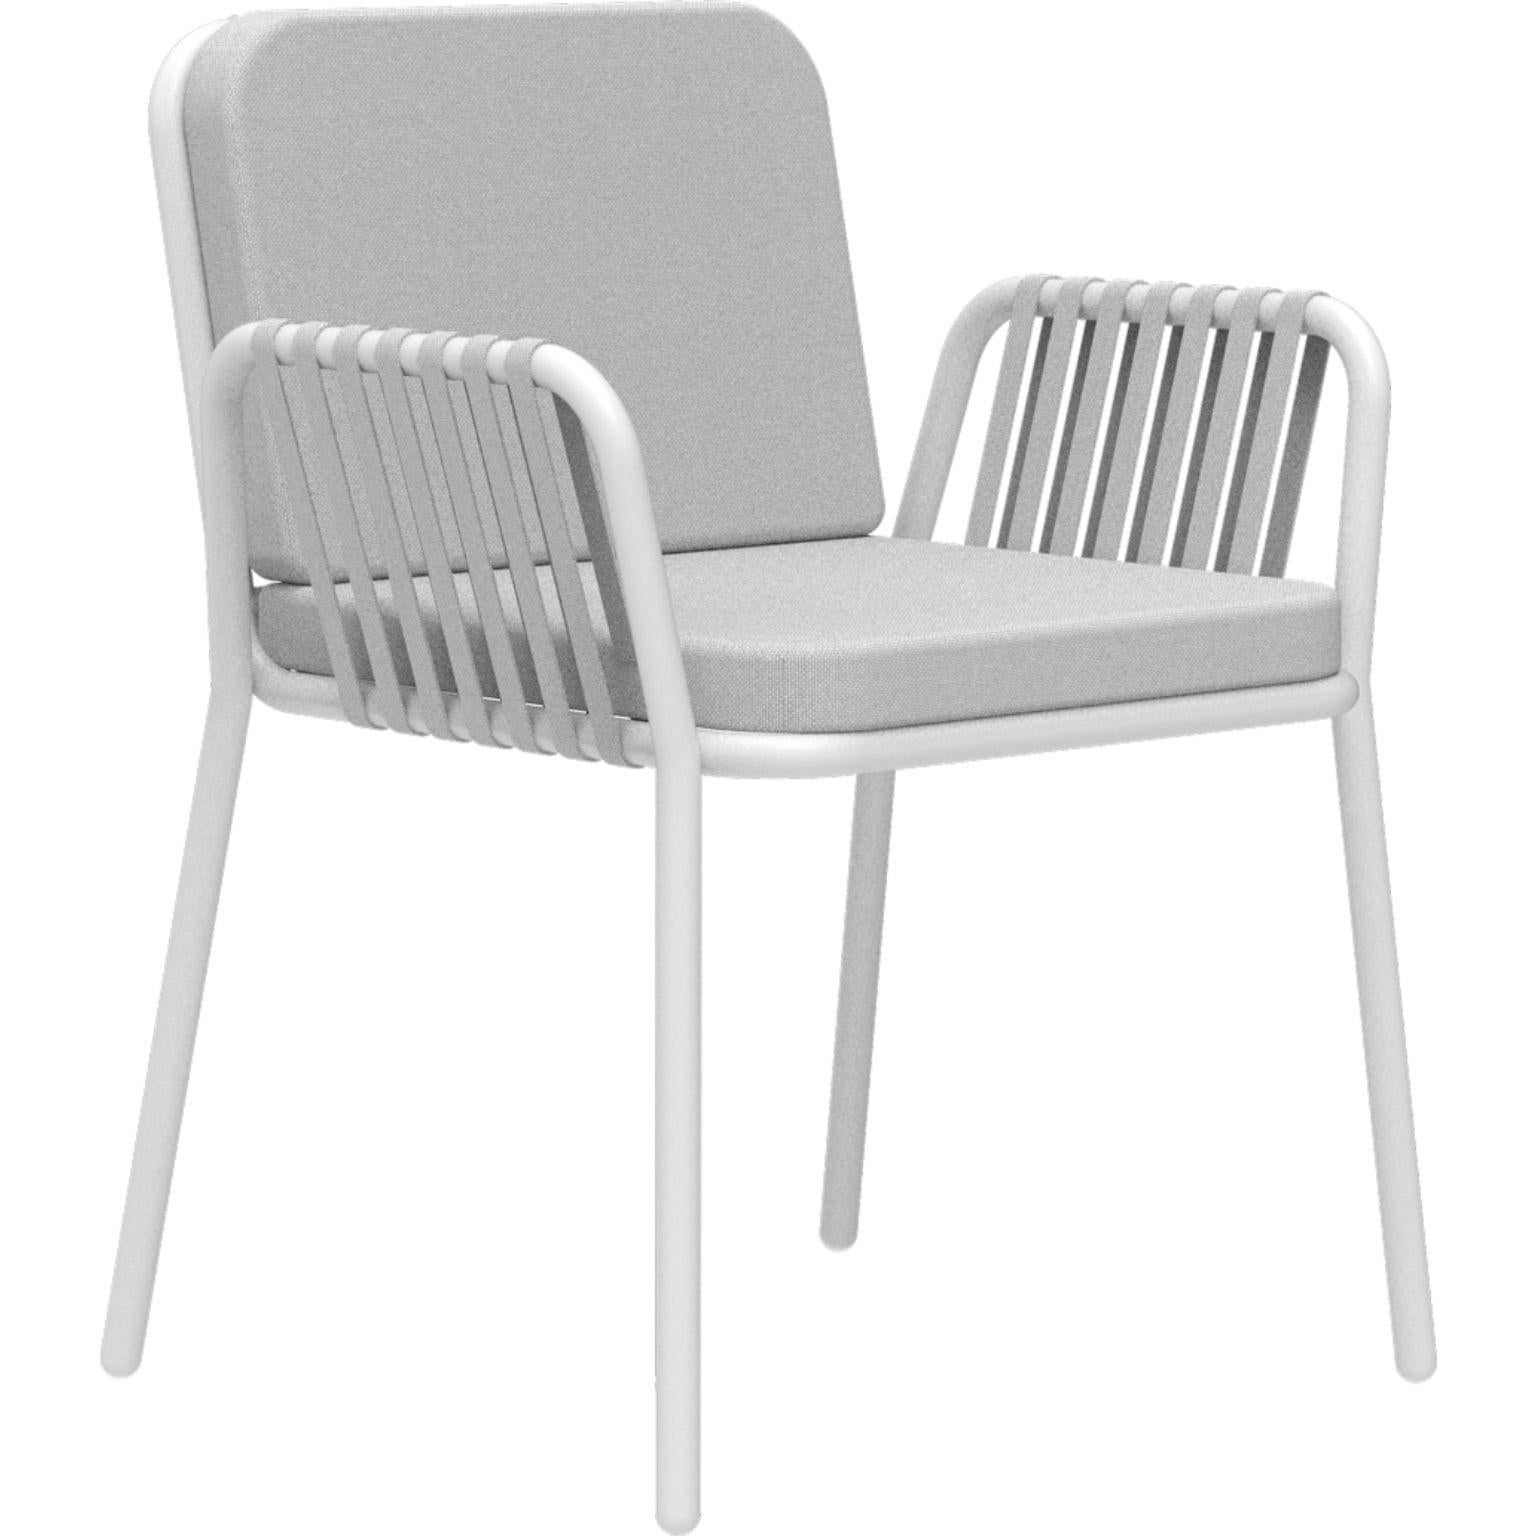 Weißer Sessel mit Bändern von MOWEE
Abmessungen: T60 x B62 x H83 cm (Sitzhöhe 48).
MATERIAL: Aluminium und Polstermaterial.
Gewicht: 5 kg.
Auch in verschiedenen Farben und Ausführungen erhältlich.

Eine Collection'S, die durch ihre Schönheit und